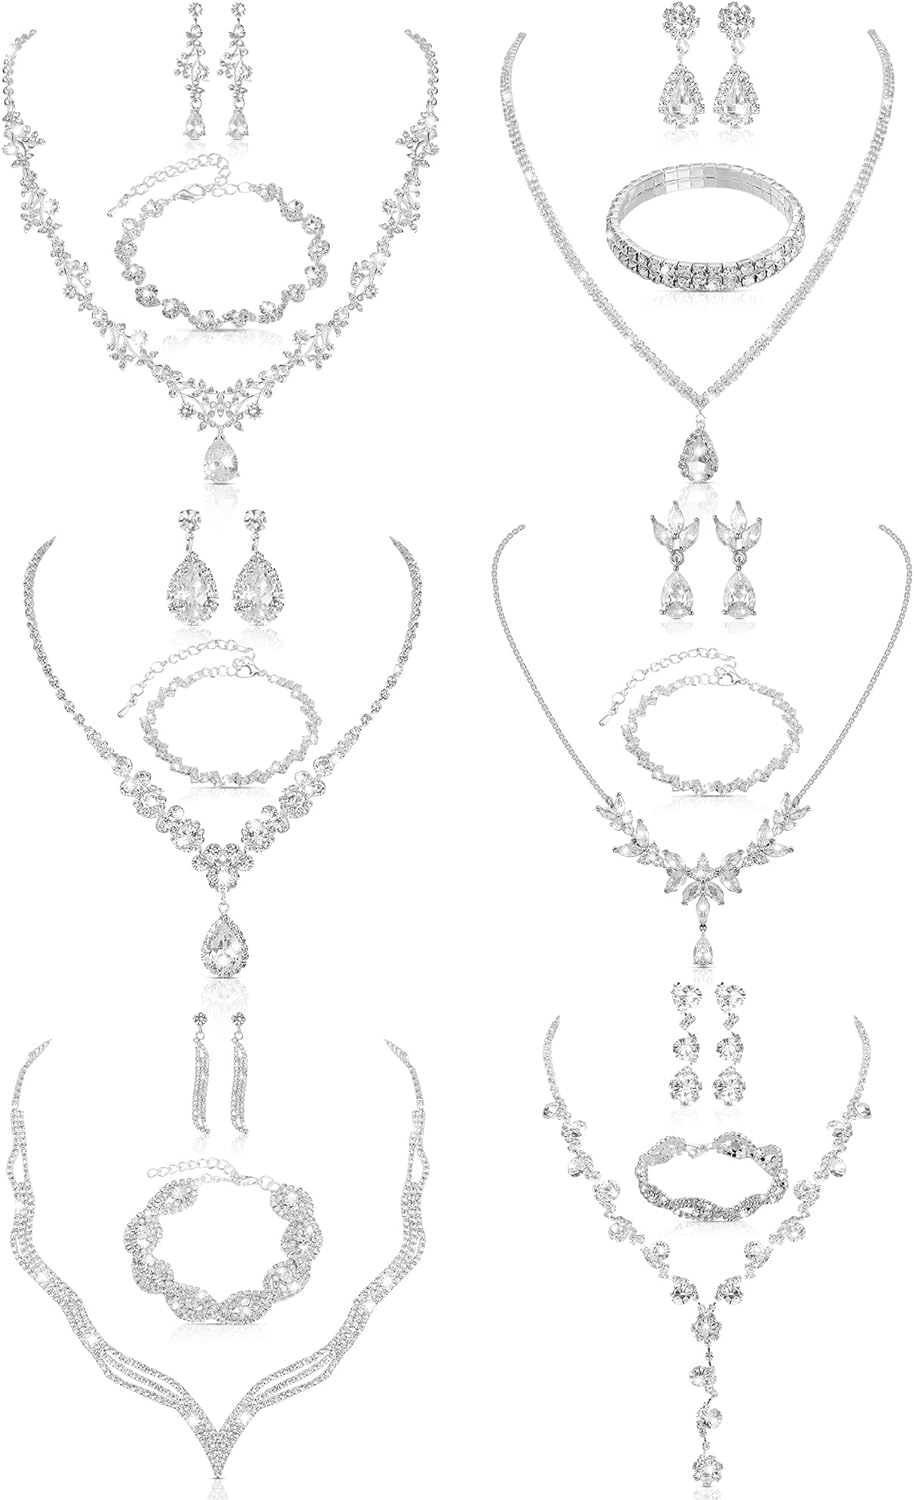 6 Set Women Silver Jewelry Set Including Crystal Rhinestone Necklace Rhinestone Bracelet Teardrop Dangle Earrings for Wedding